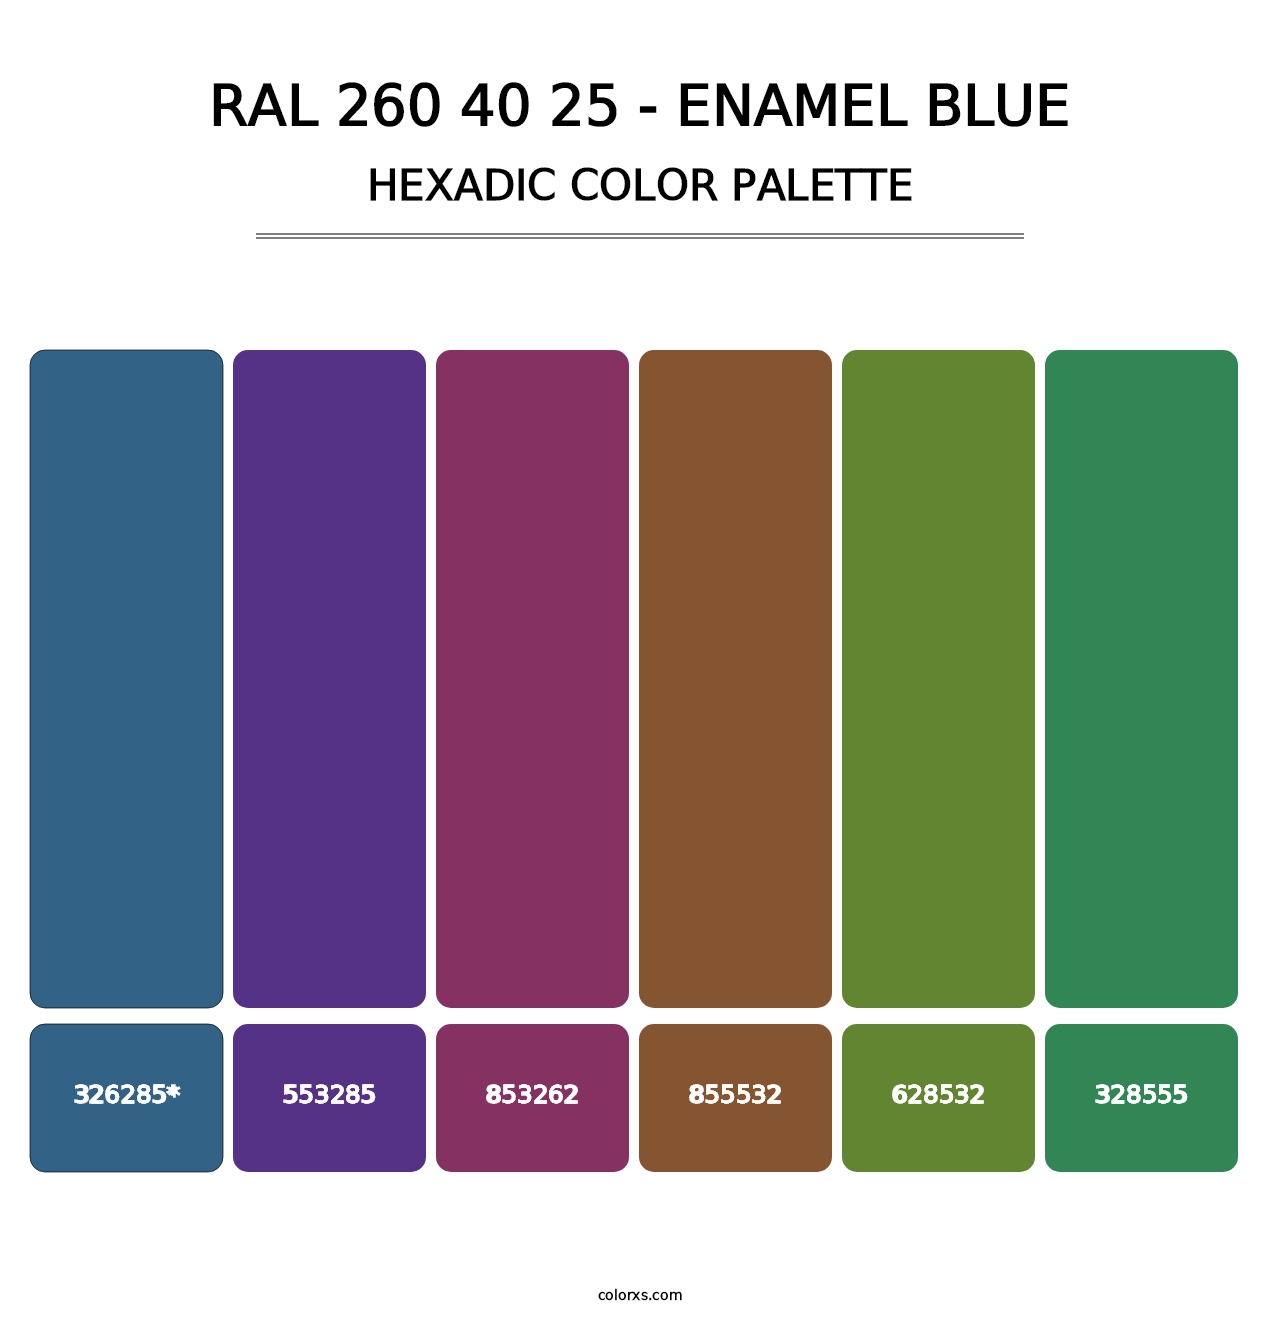 RAL 260 40 25 - Enamel Blue - Hexadic Color Palette